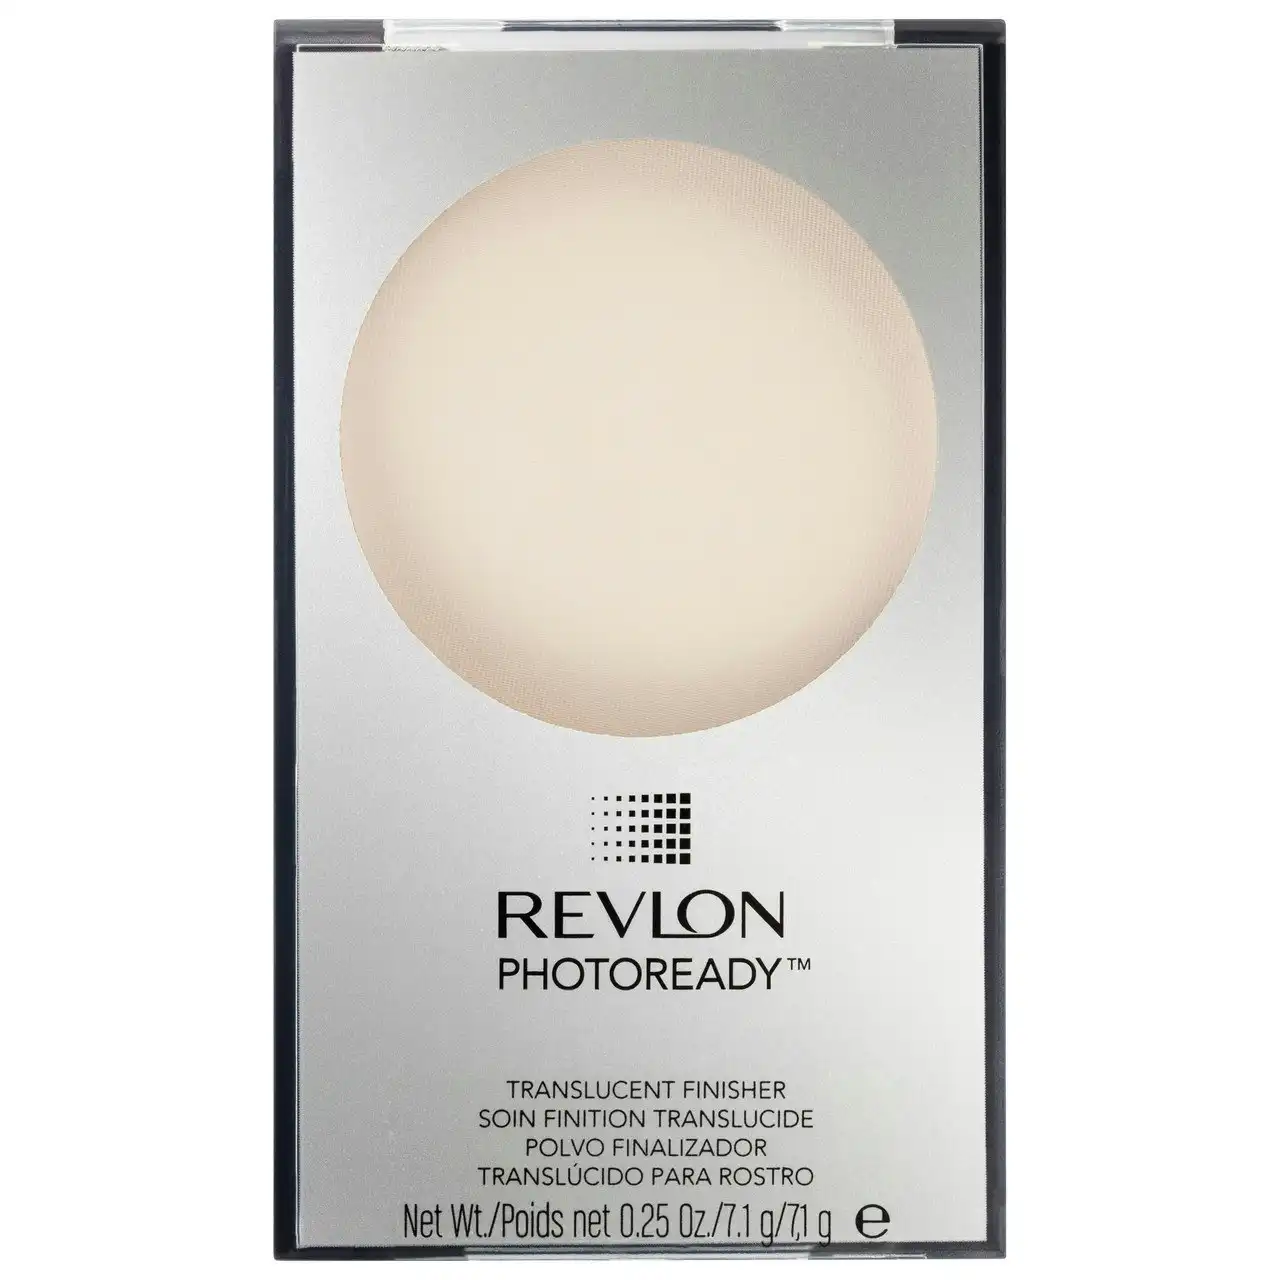 Revlon Photoready Translucent Finisher